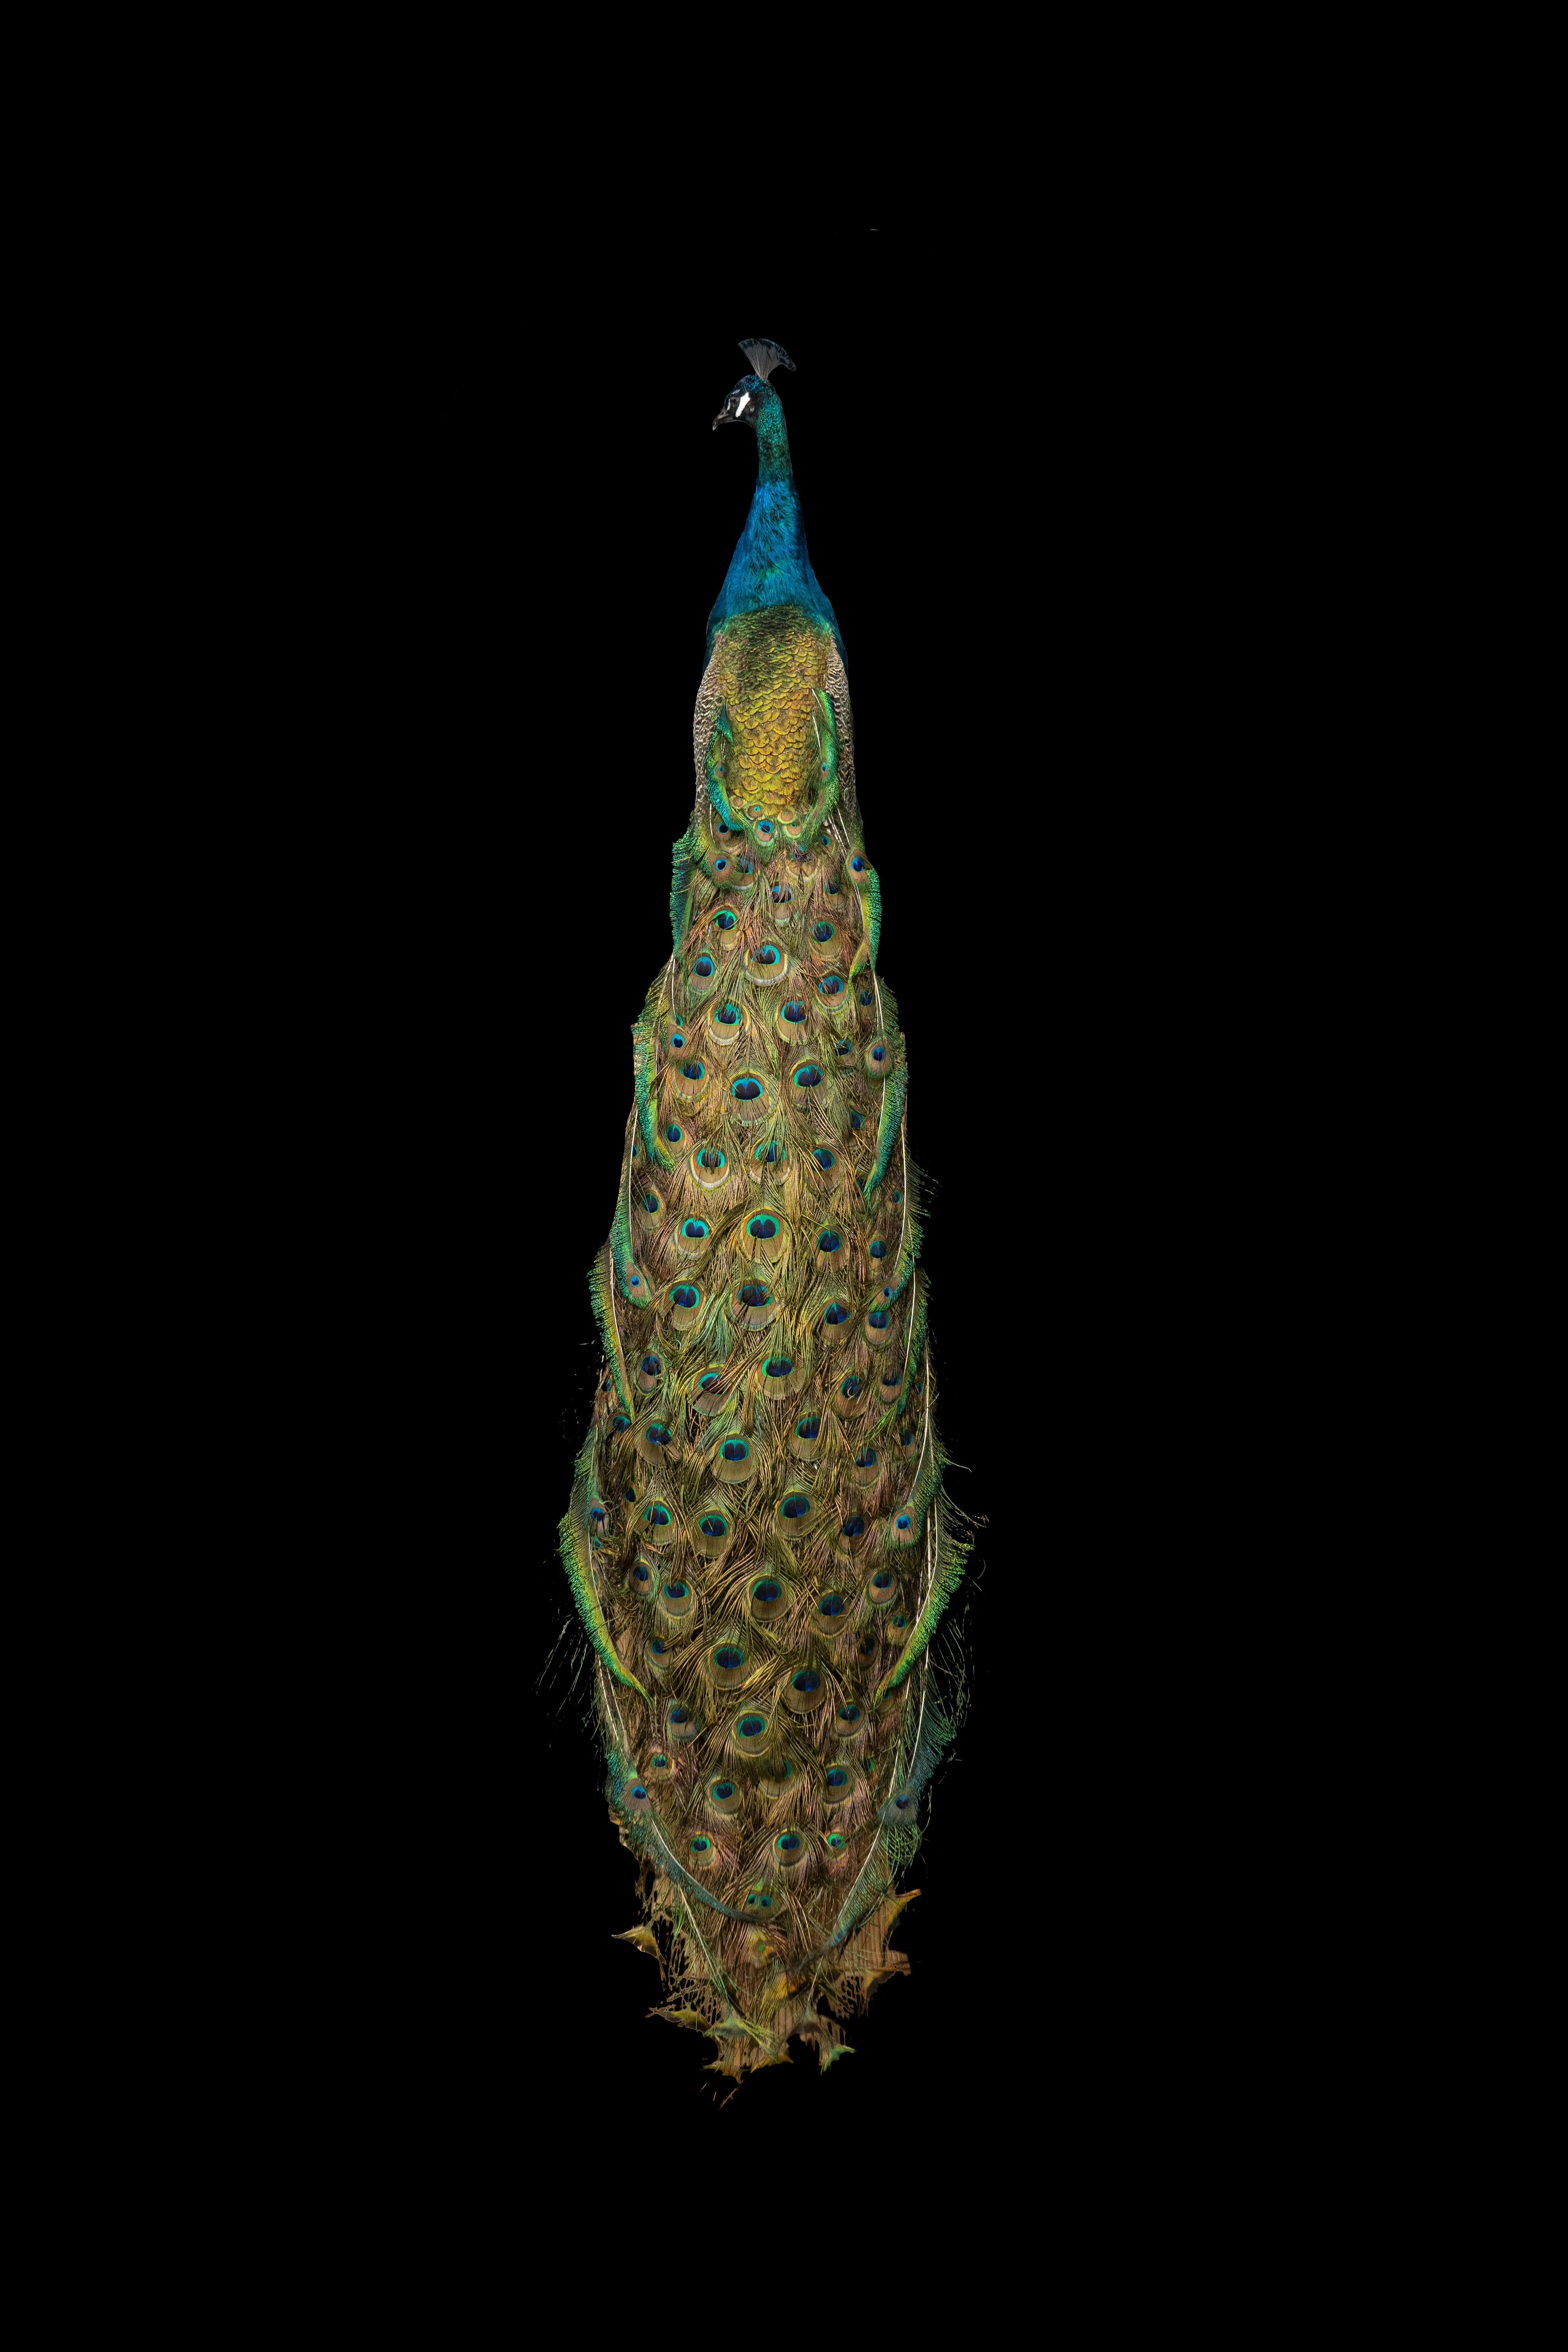 Monture taxidermique en paon bleu indien avec une magnifique coloration irisée bleue et verte. Il est monté sur un socle ovale en bois et peut être présenté en le plaçant sur un support mural, une cheminée ou un socle. Les possibilités d'affichage